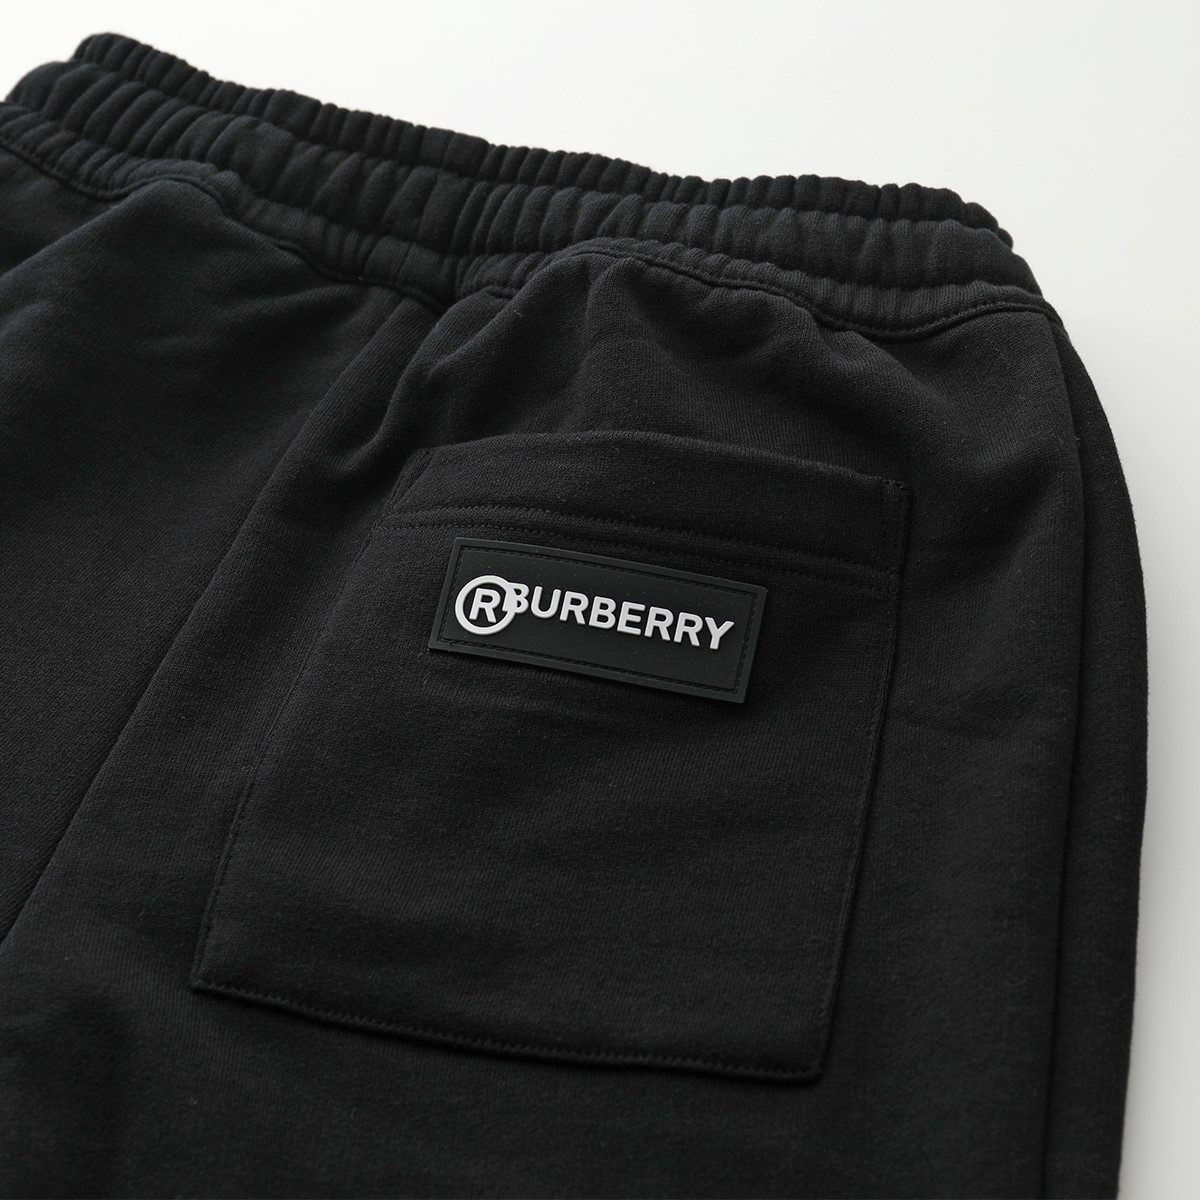 BURBERRY バーバリー 8024541 ヴィンテージチェックパネル×ロゴ スウェットパンツ BLACK レディース | インポートセレクト  musee